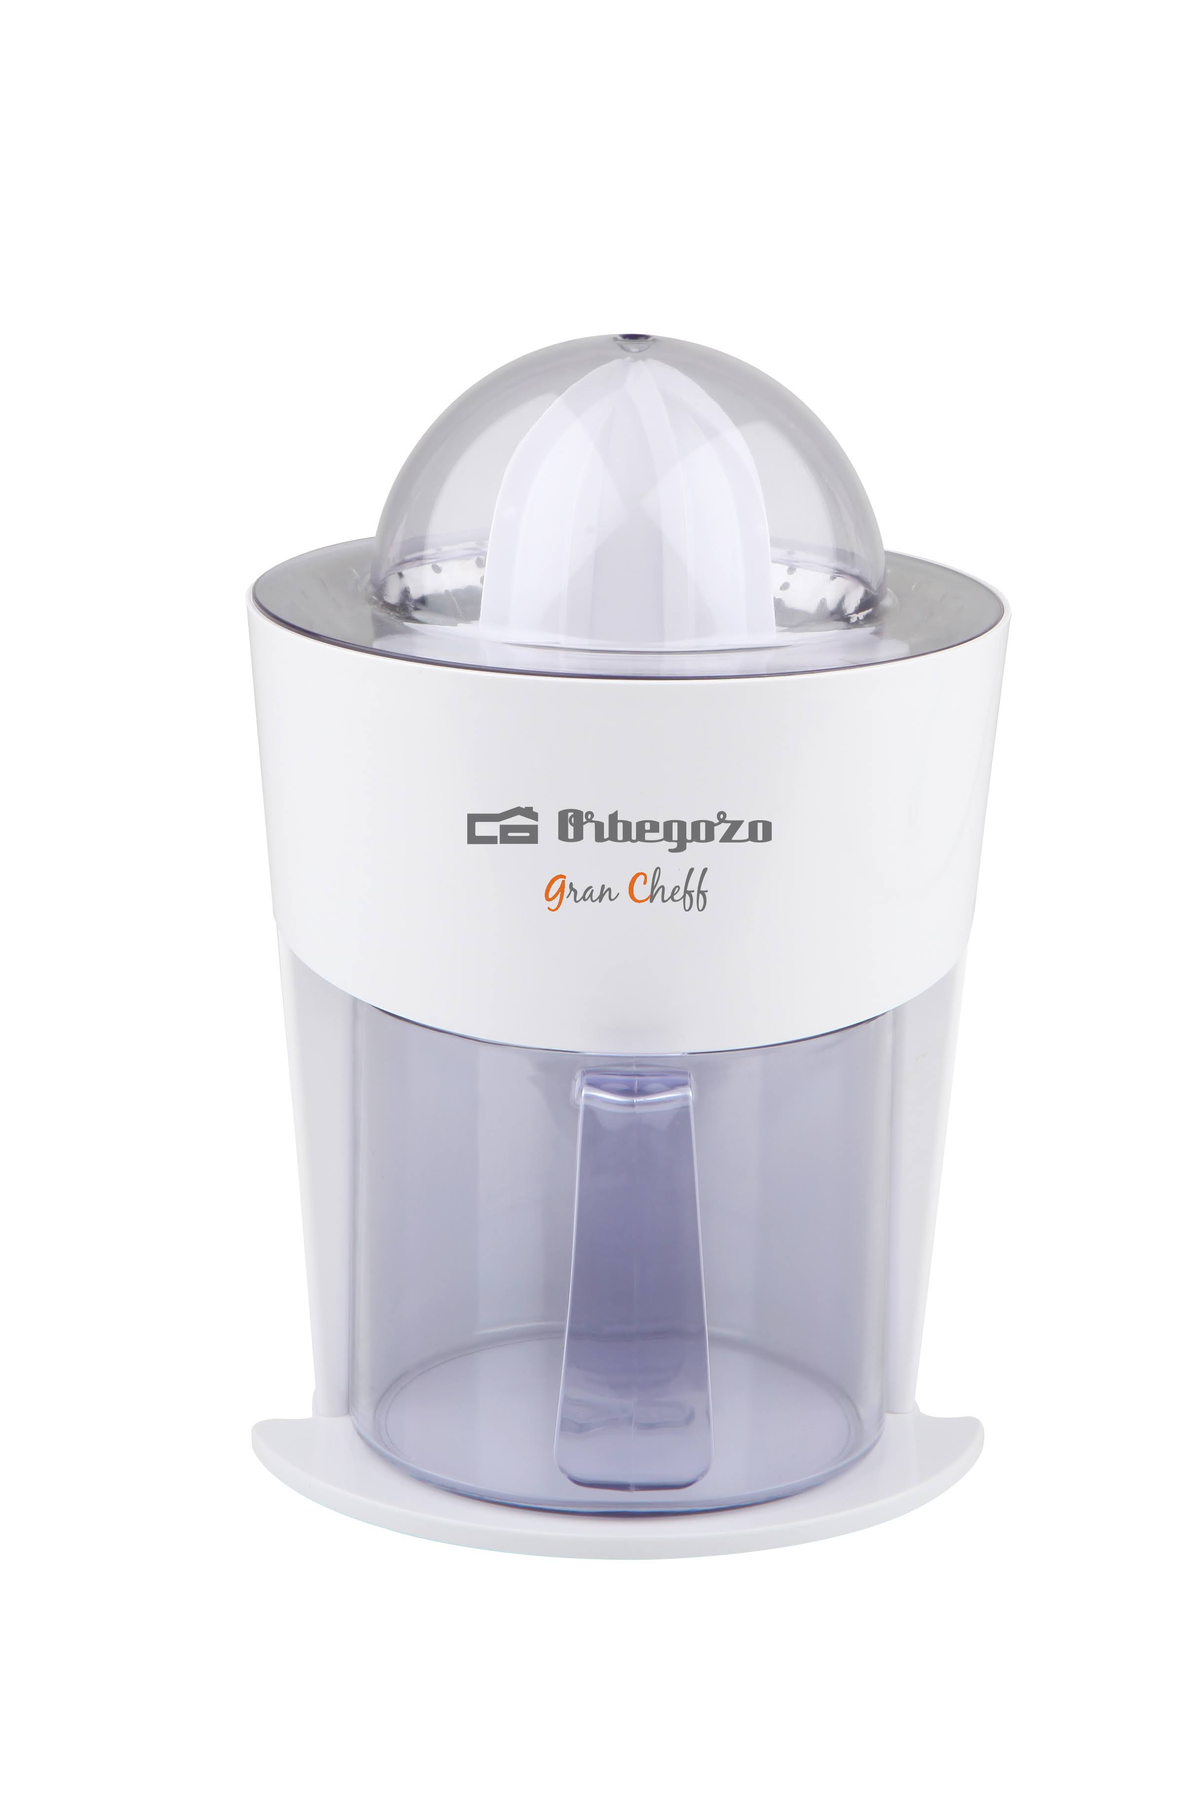 Exprimidor Orbegozo Ep325 40 3250 zumo de naranjas filtro pulpa acero inoxidable sistema vertido continuo jarra 1 litro bidireccional potencia 40w 1000 220 ep3250